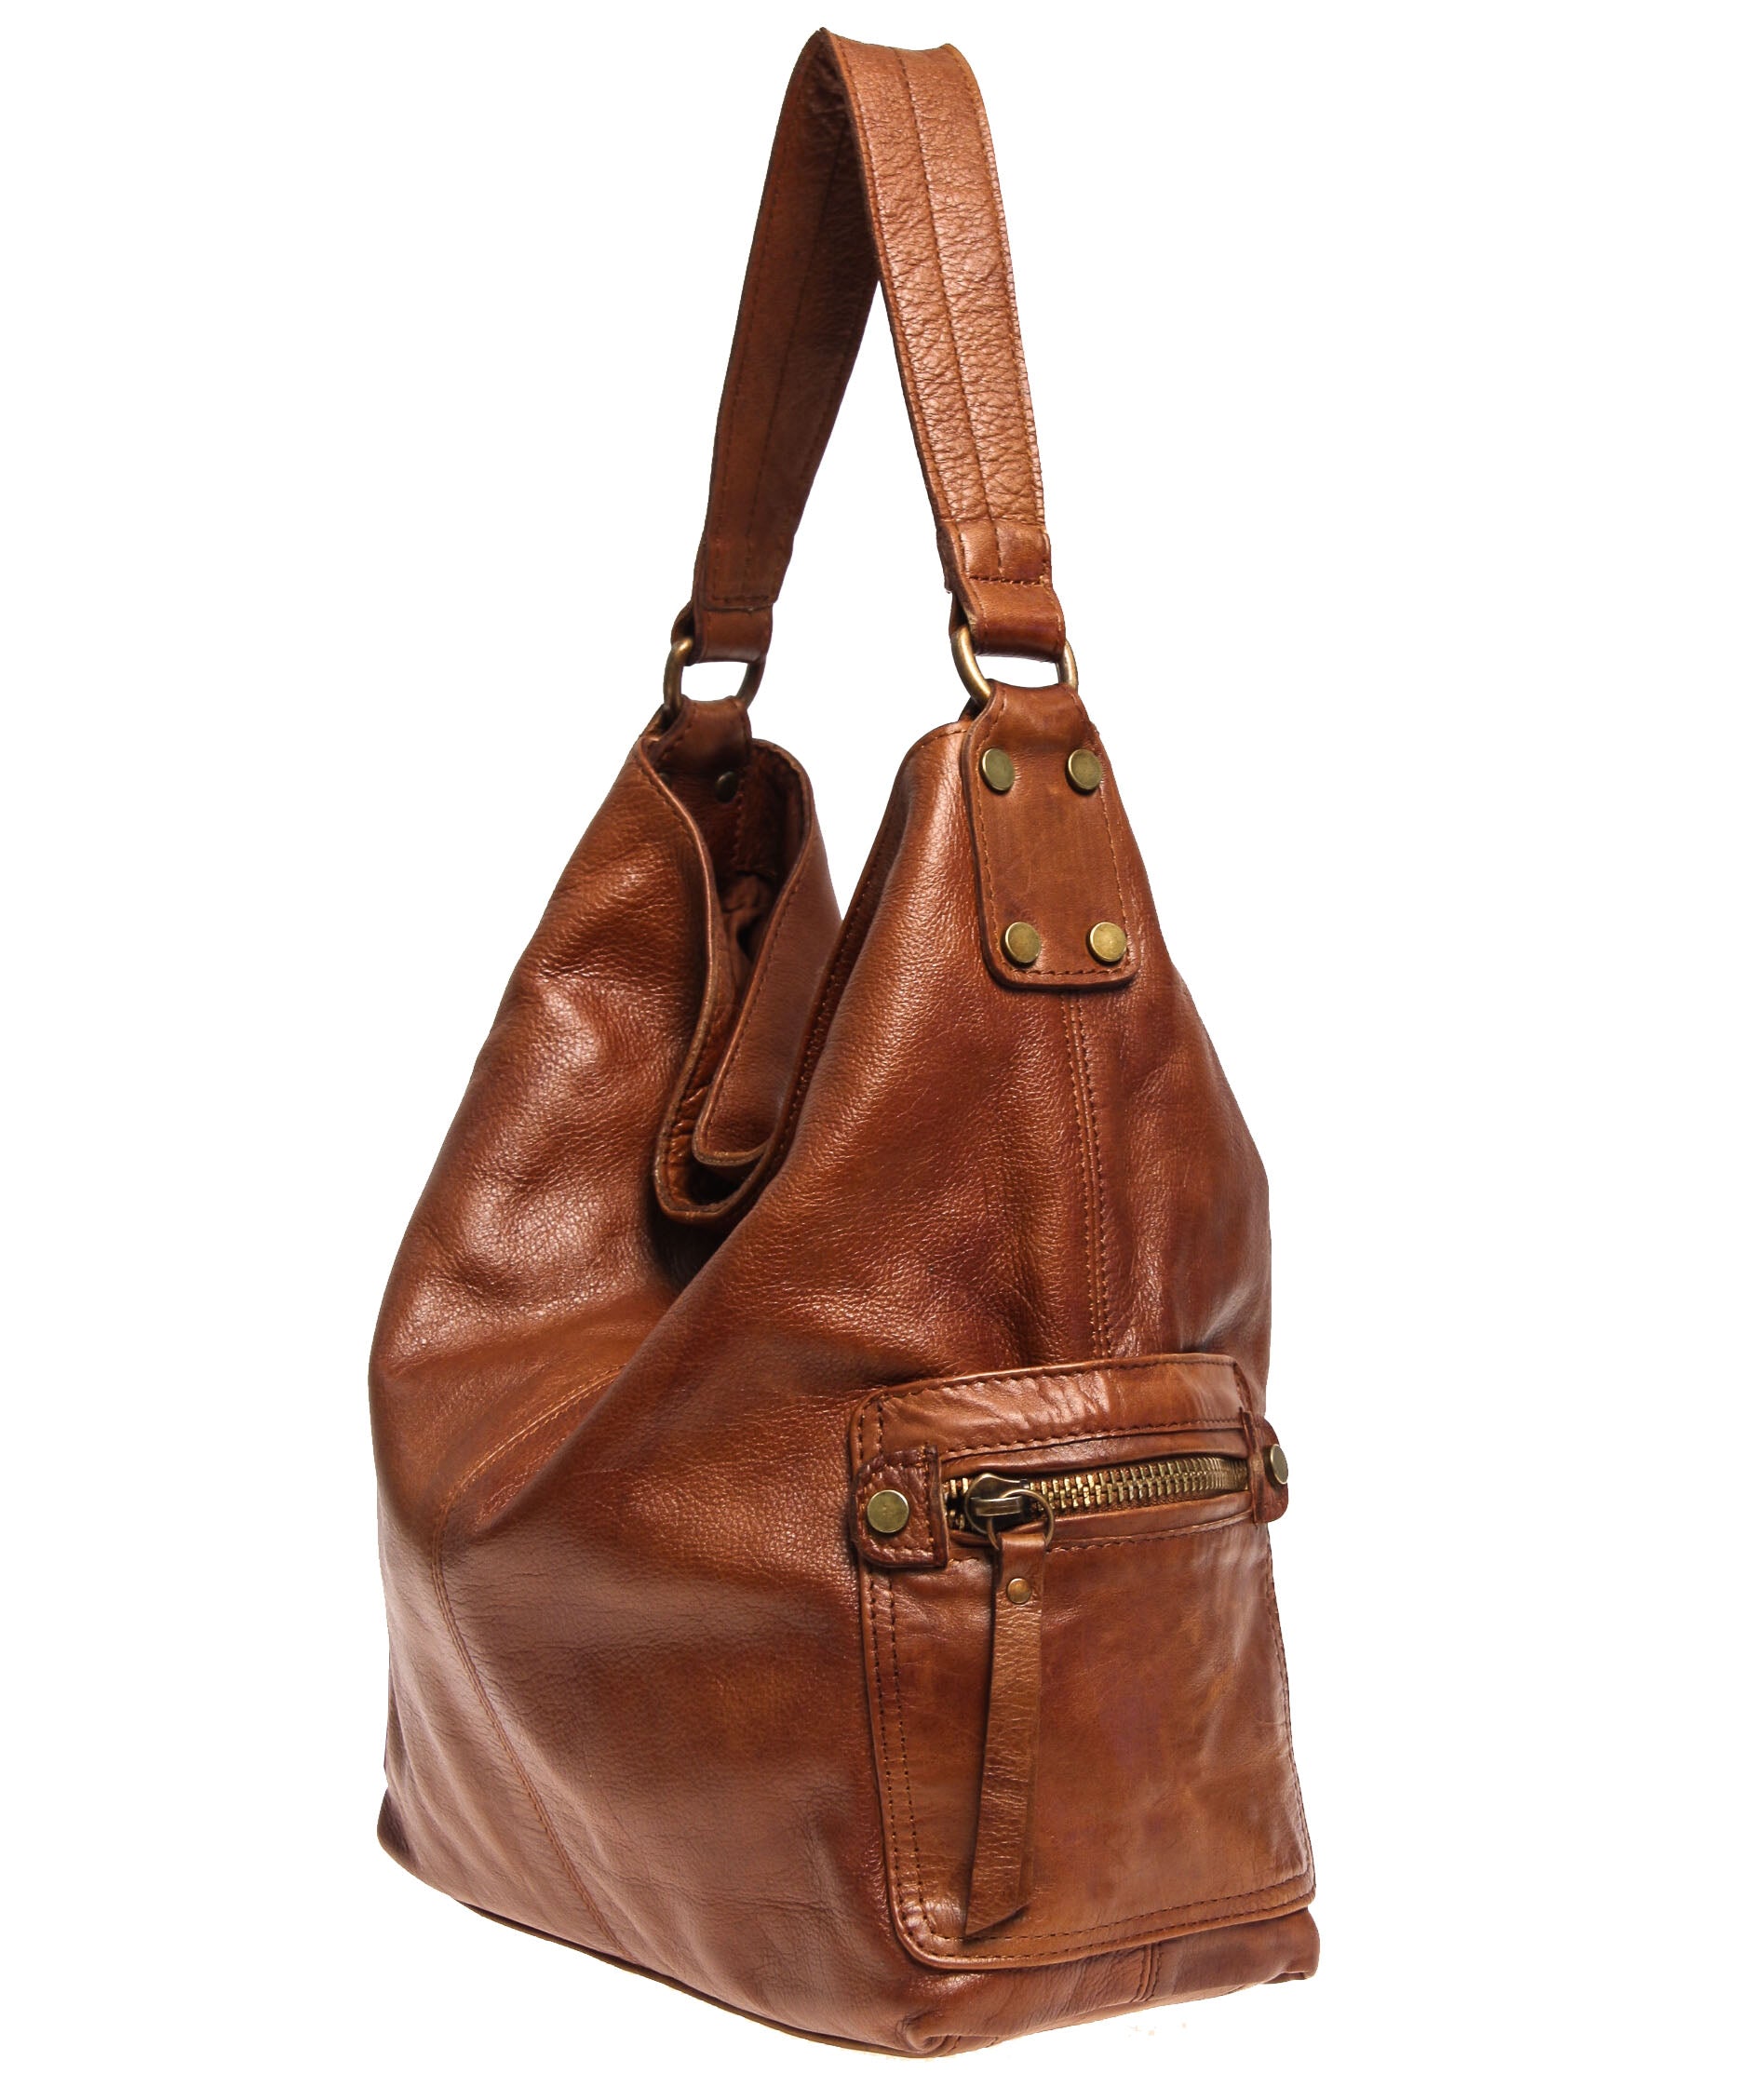 Tano Blue Shoulder Bags for Women | Mercari